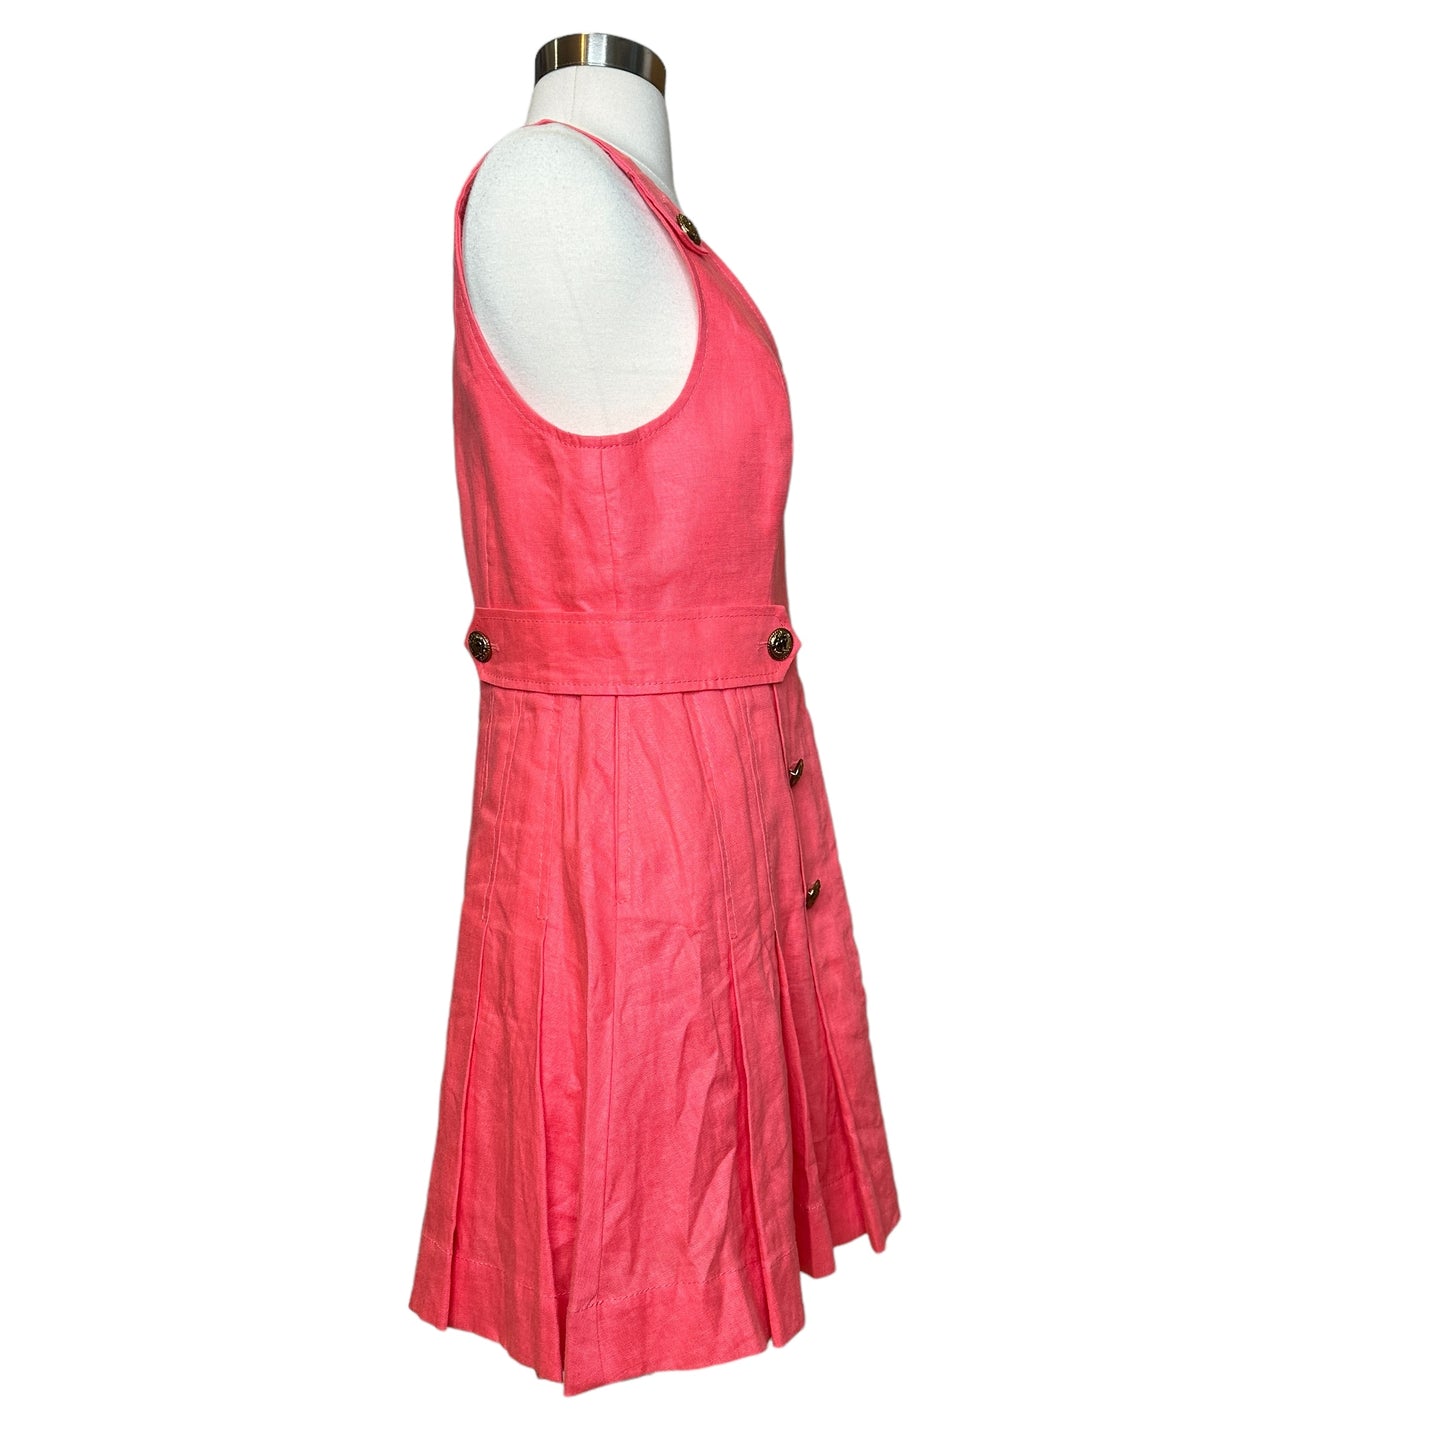 Pink Lovestruck Mini Dress - M